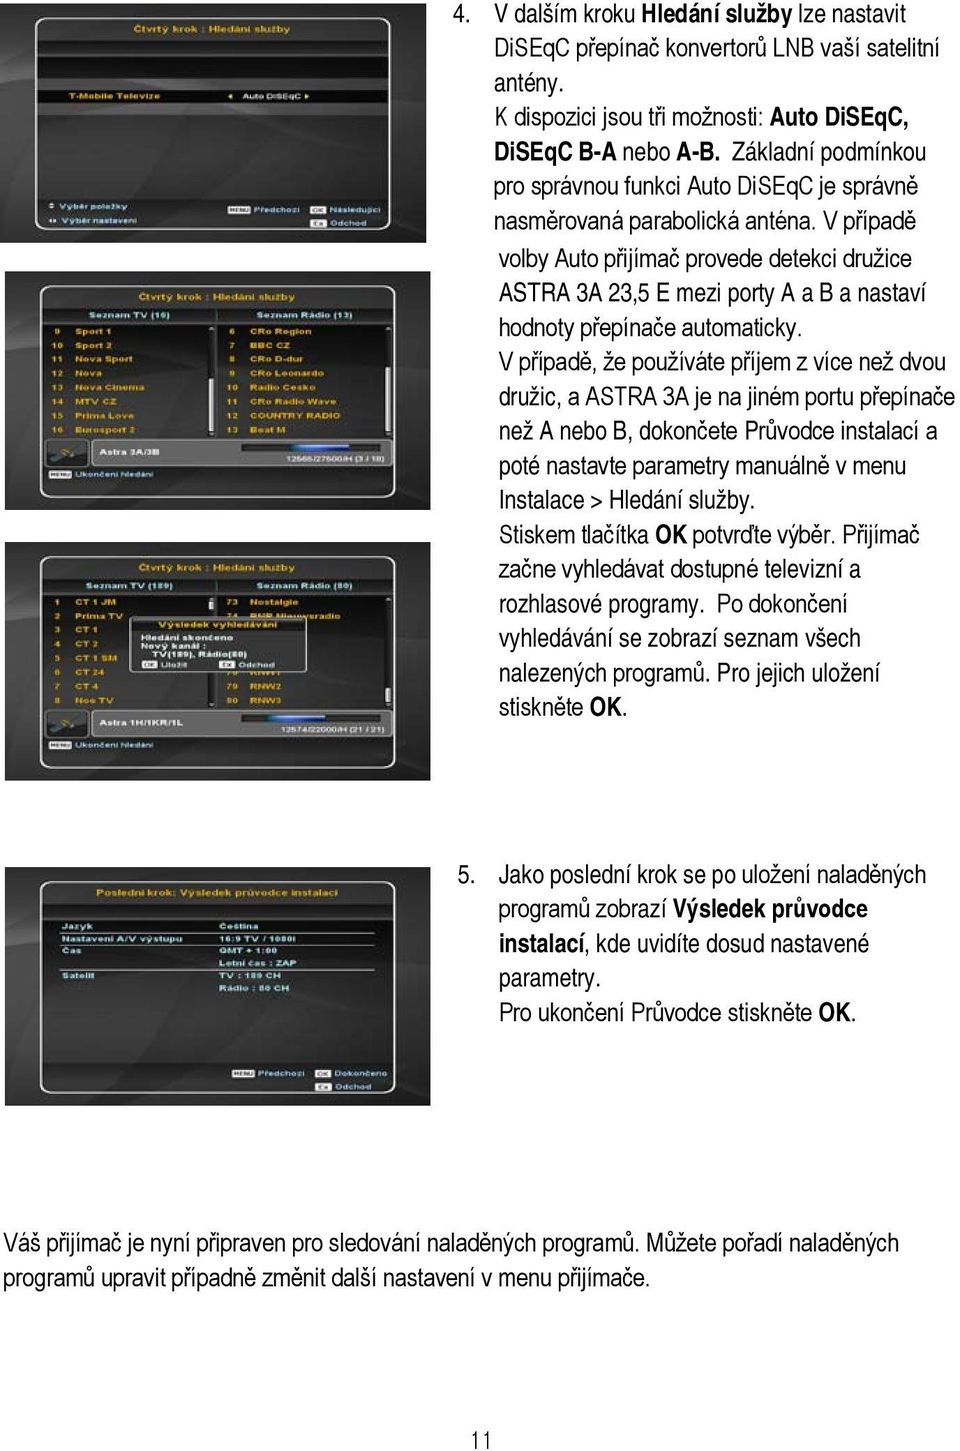 V případě volby Auto přijímač provede detekci družice ASTRA 3A 23,5 E mezi porty A a B a nastaví hodnoty přepínače automaticky.